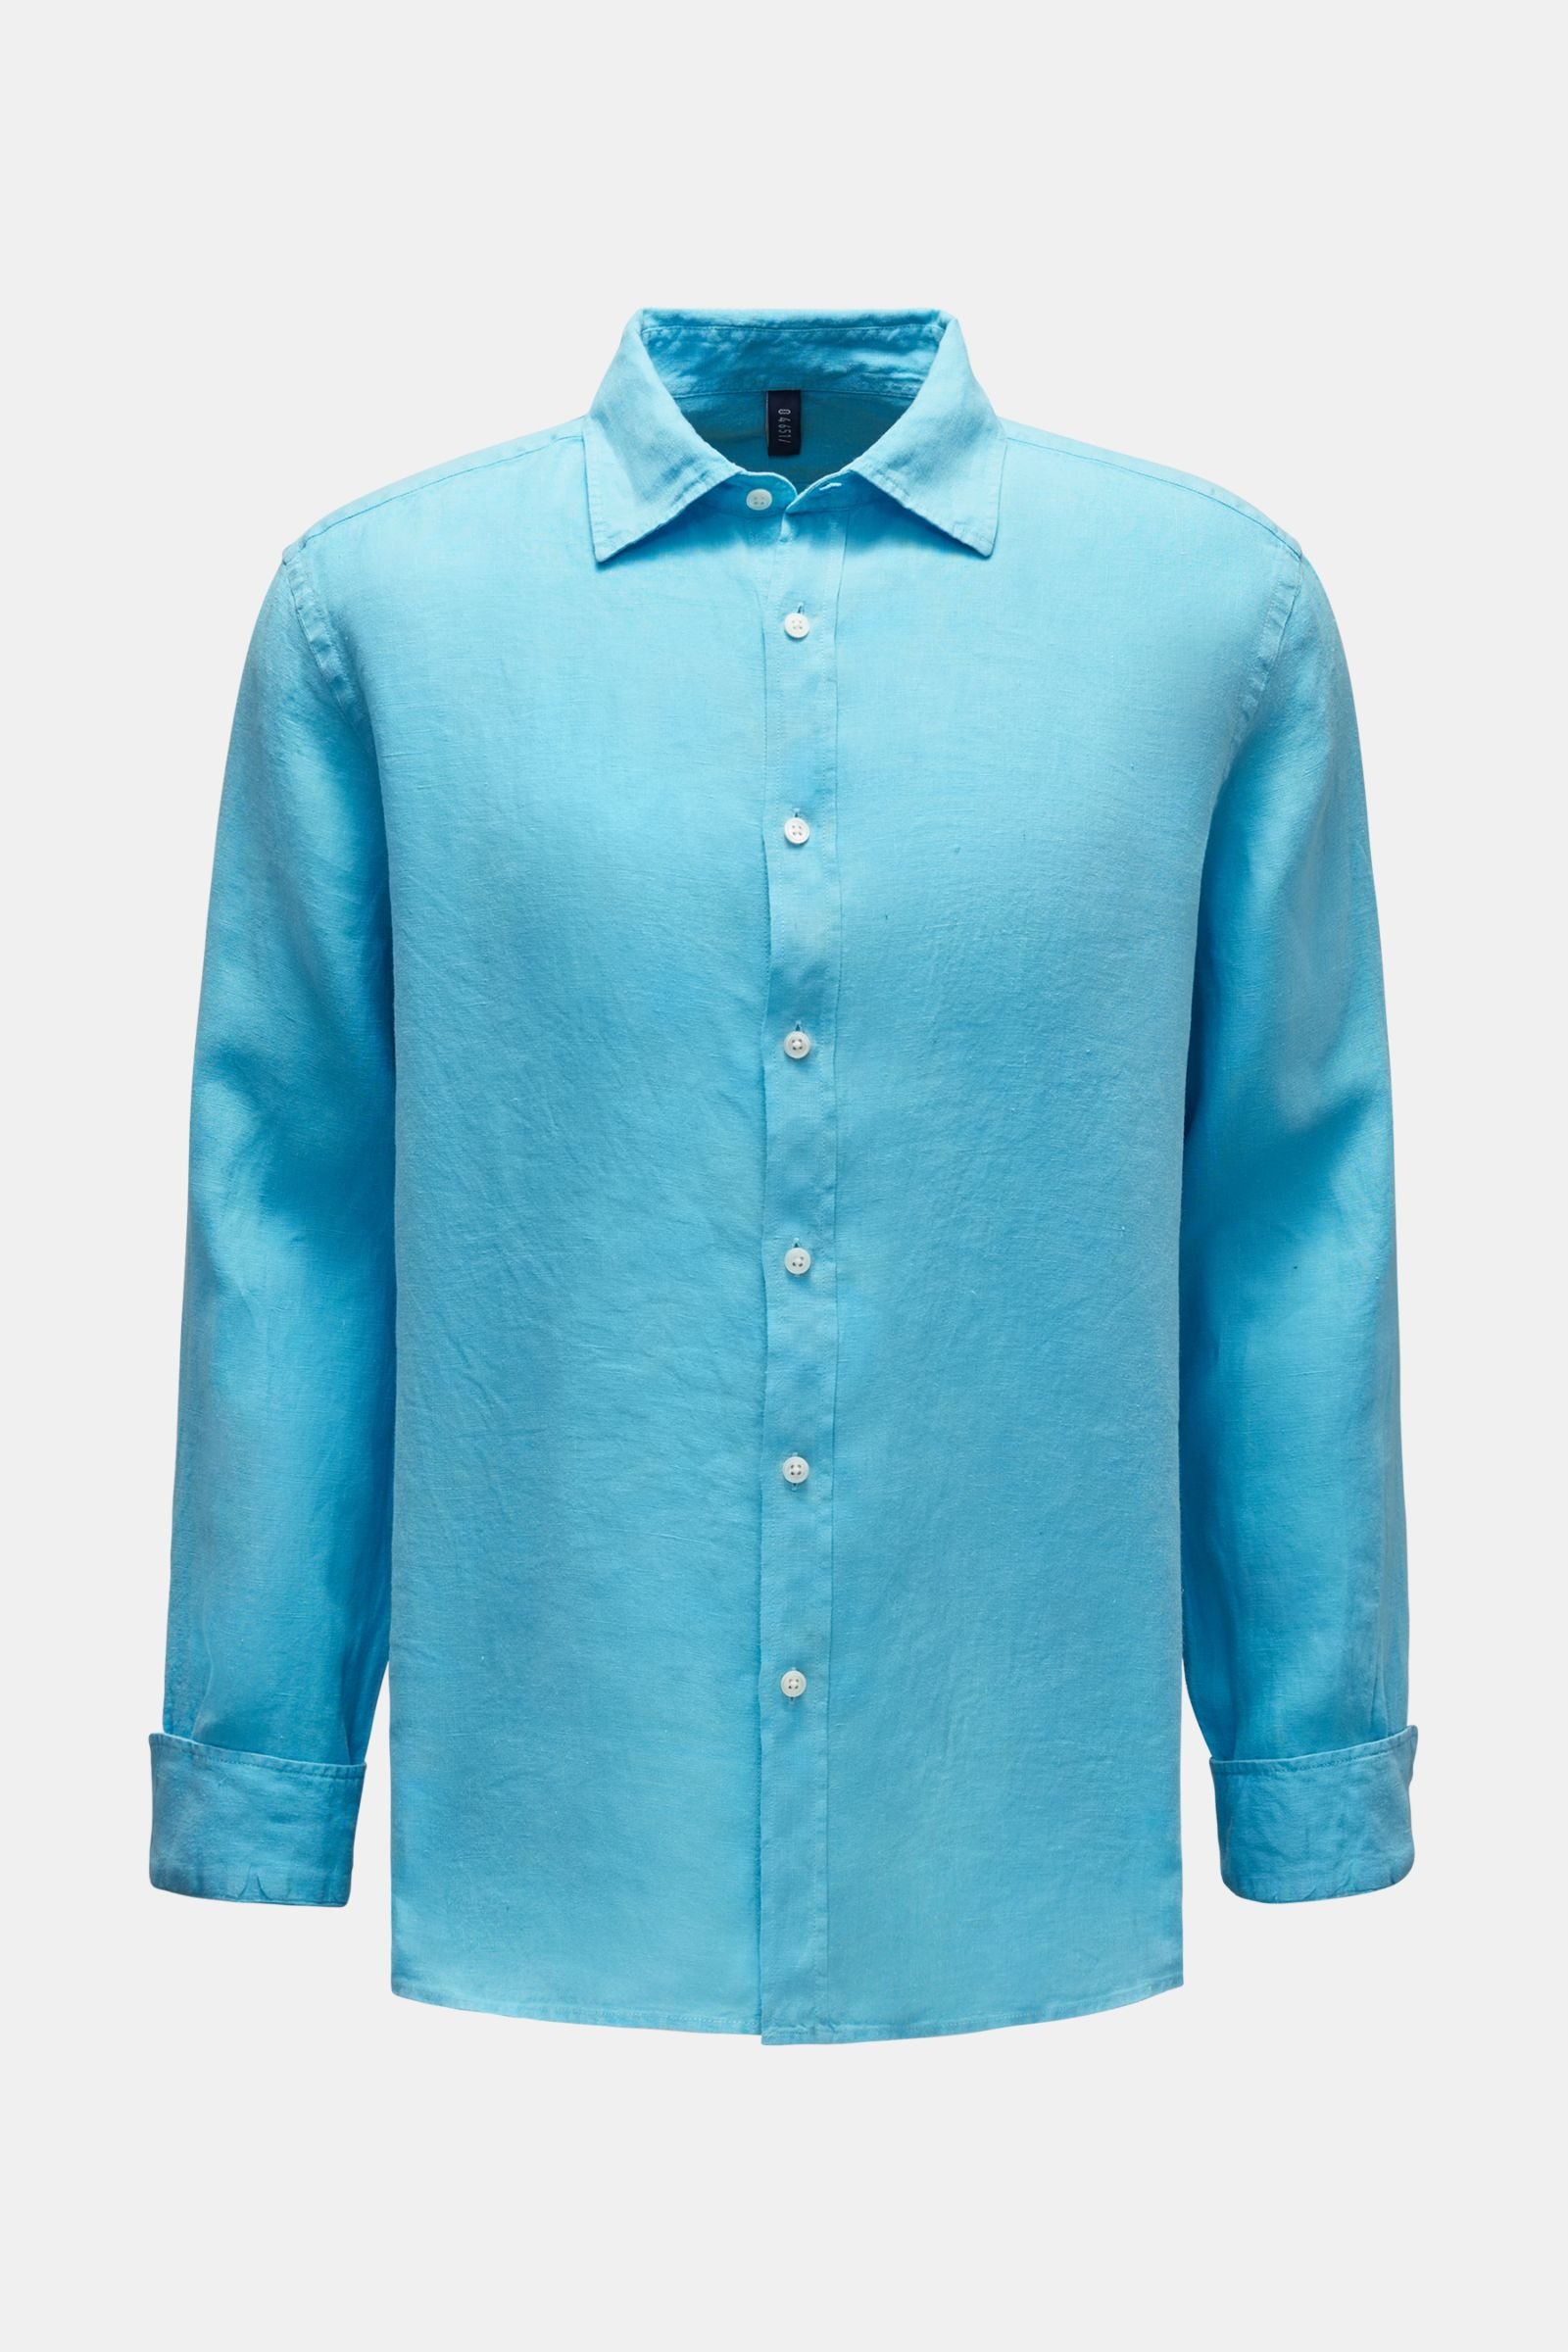 Linen shirt shark collar turquoise